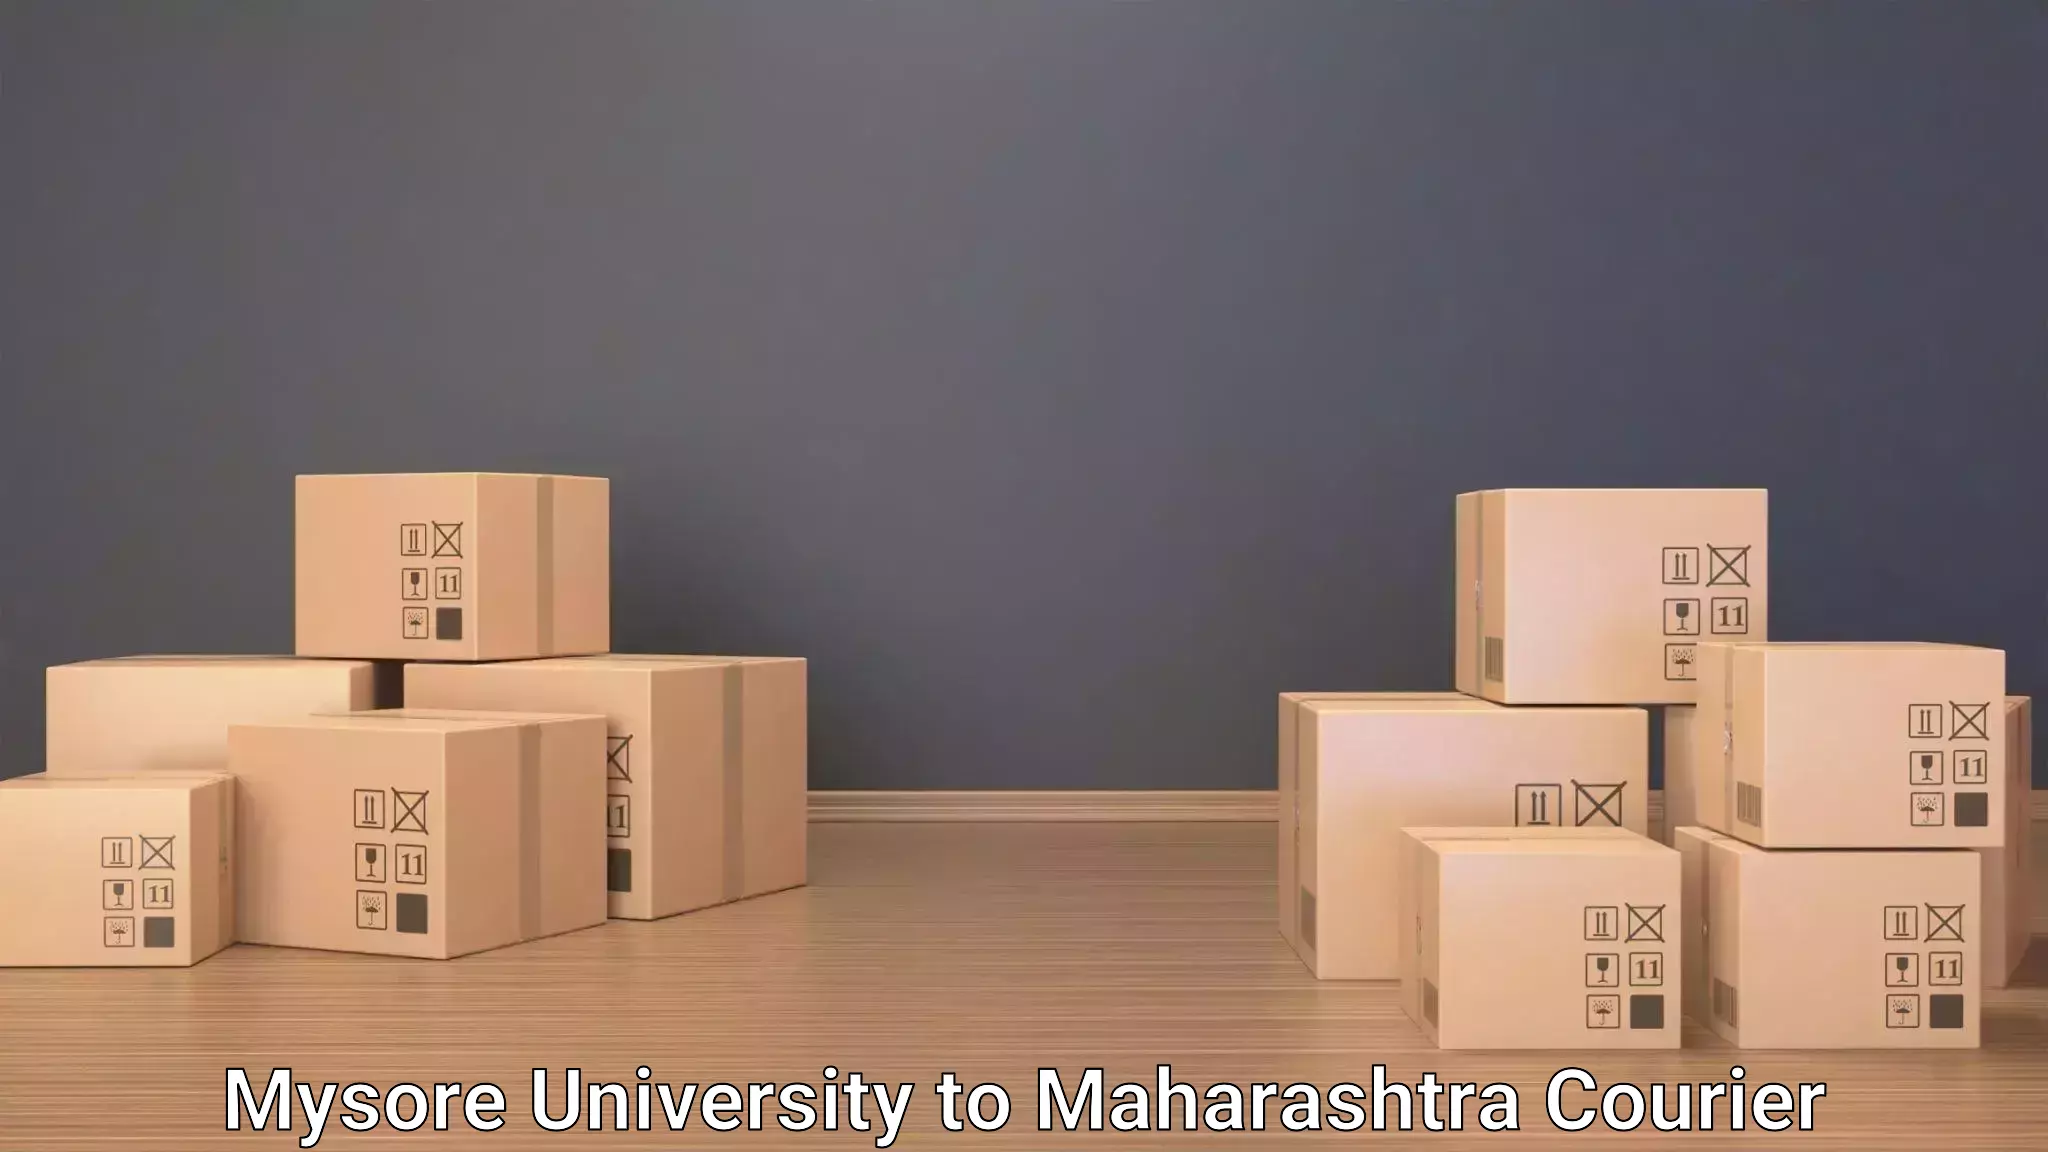 Luggage transport consulting Mysore University to Maharashtra